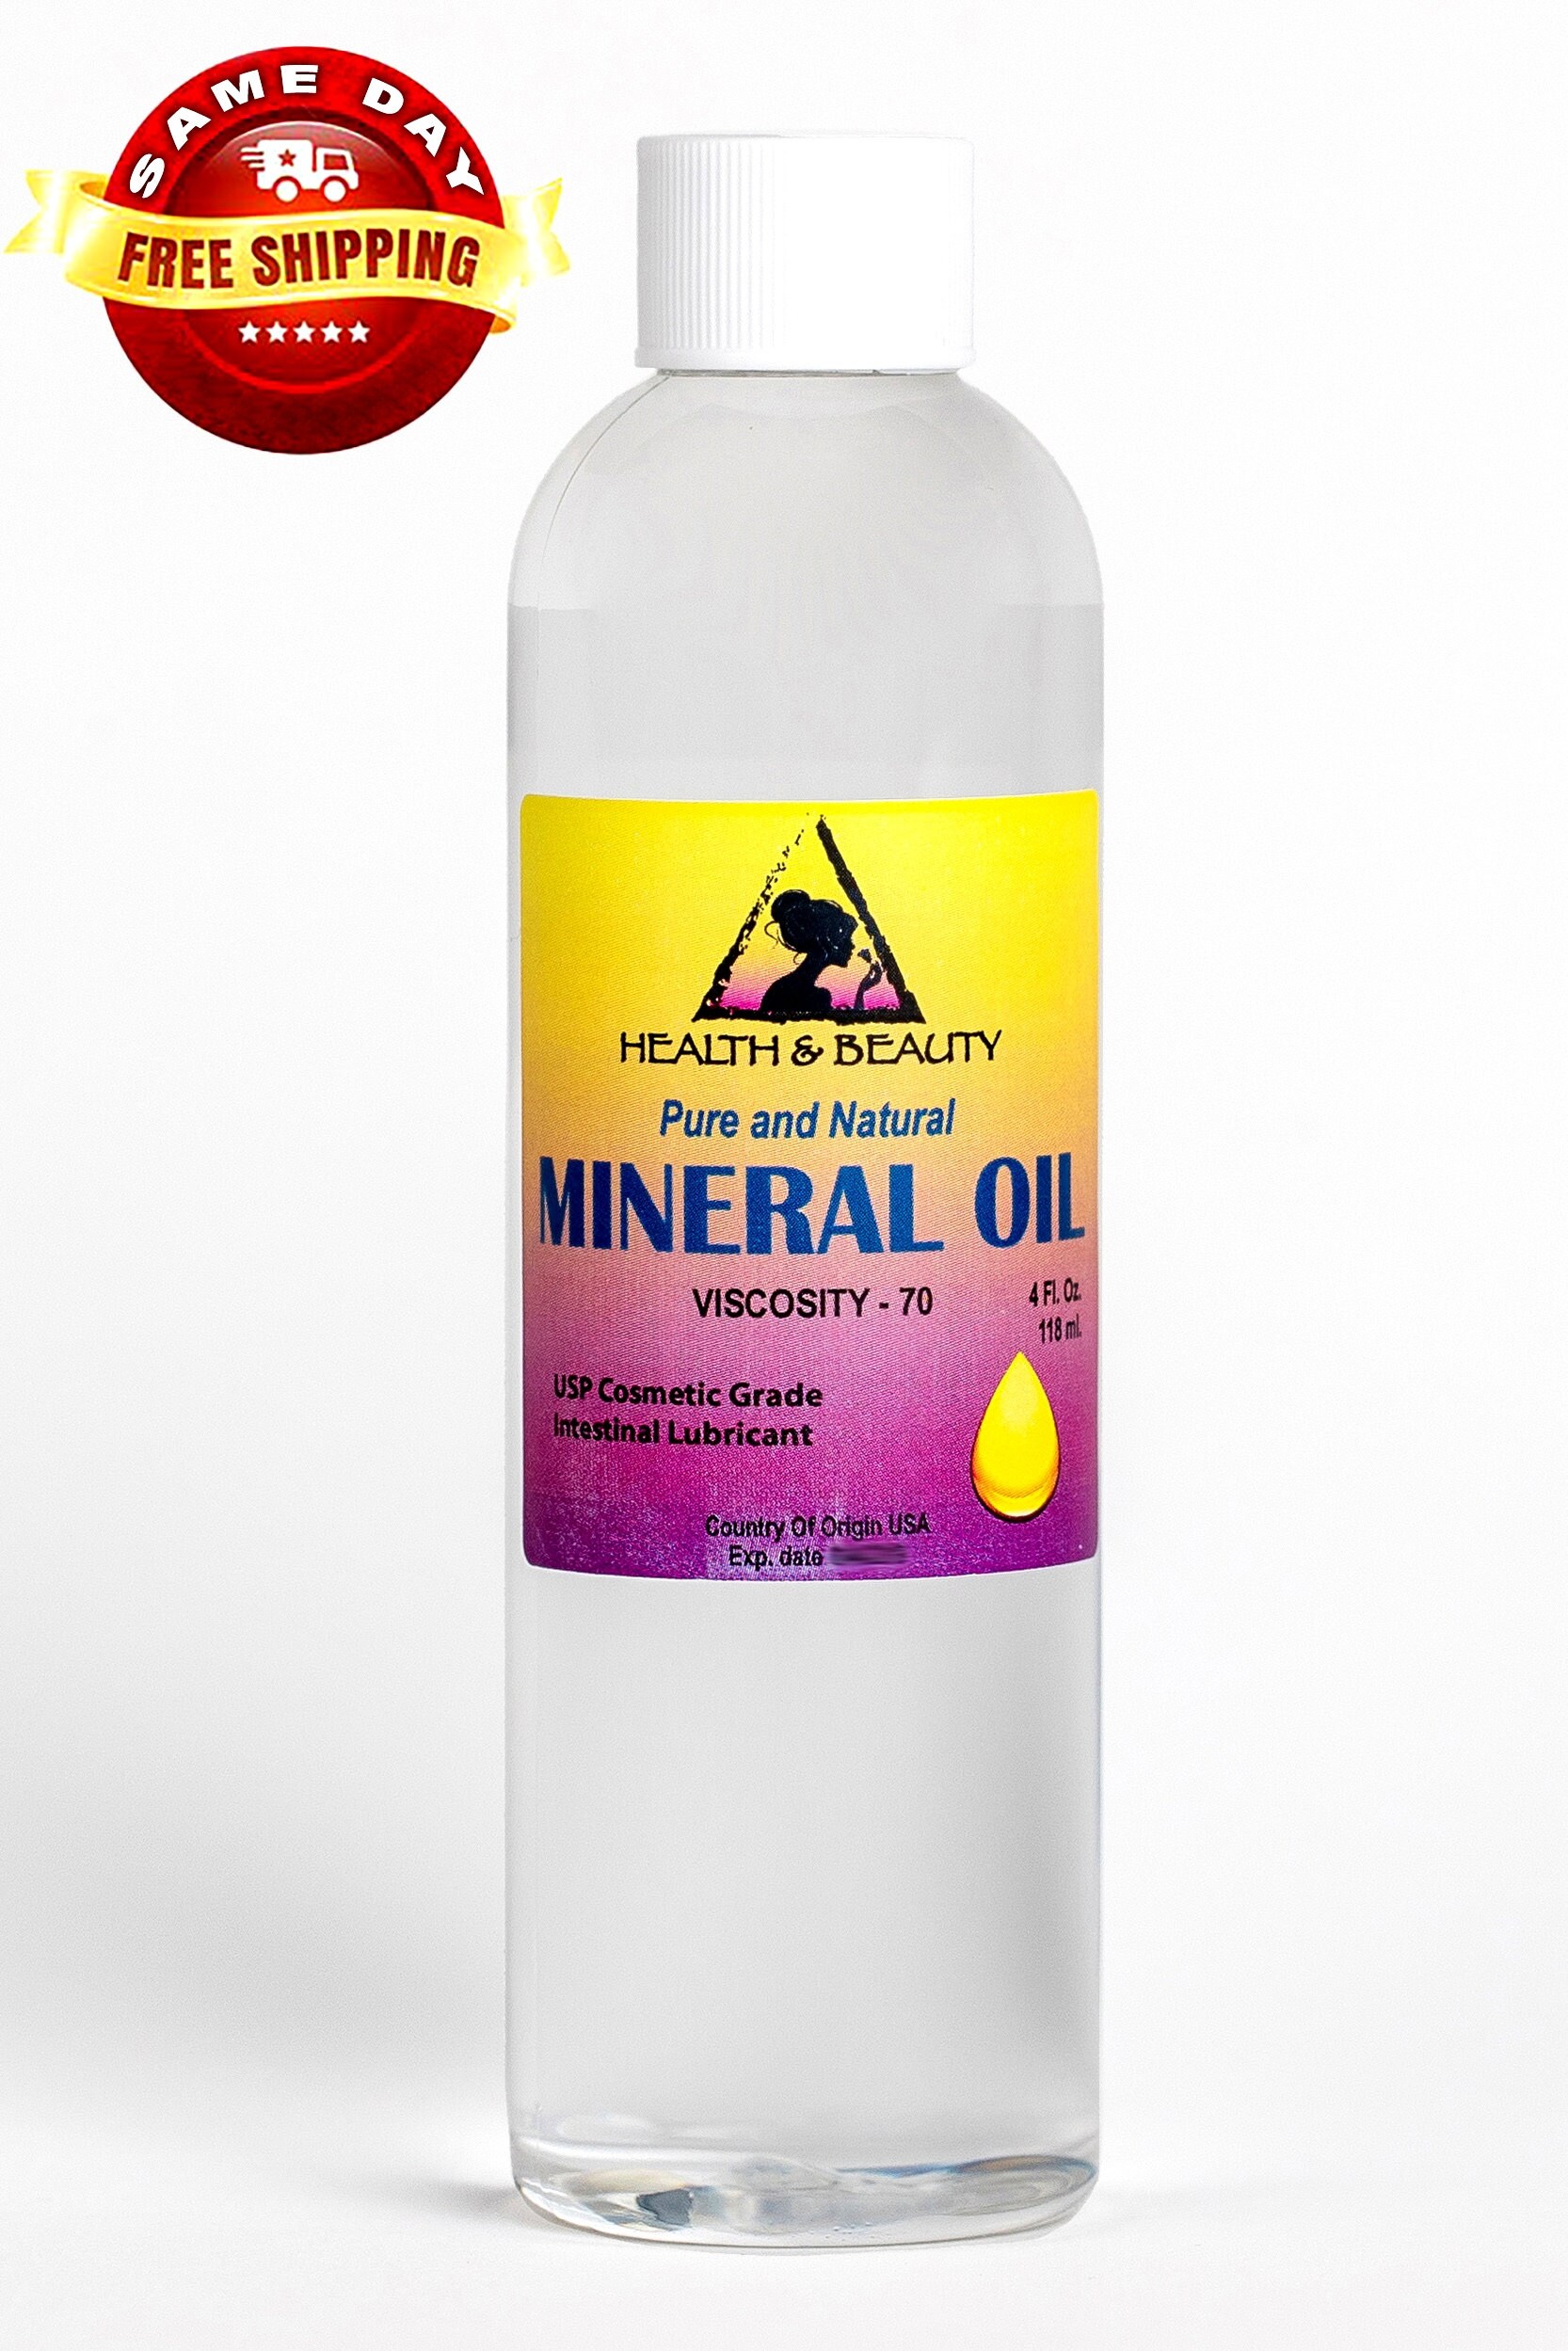 4 oz d'huile minérale de viscosité 70 NF 100 % pure